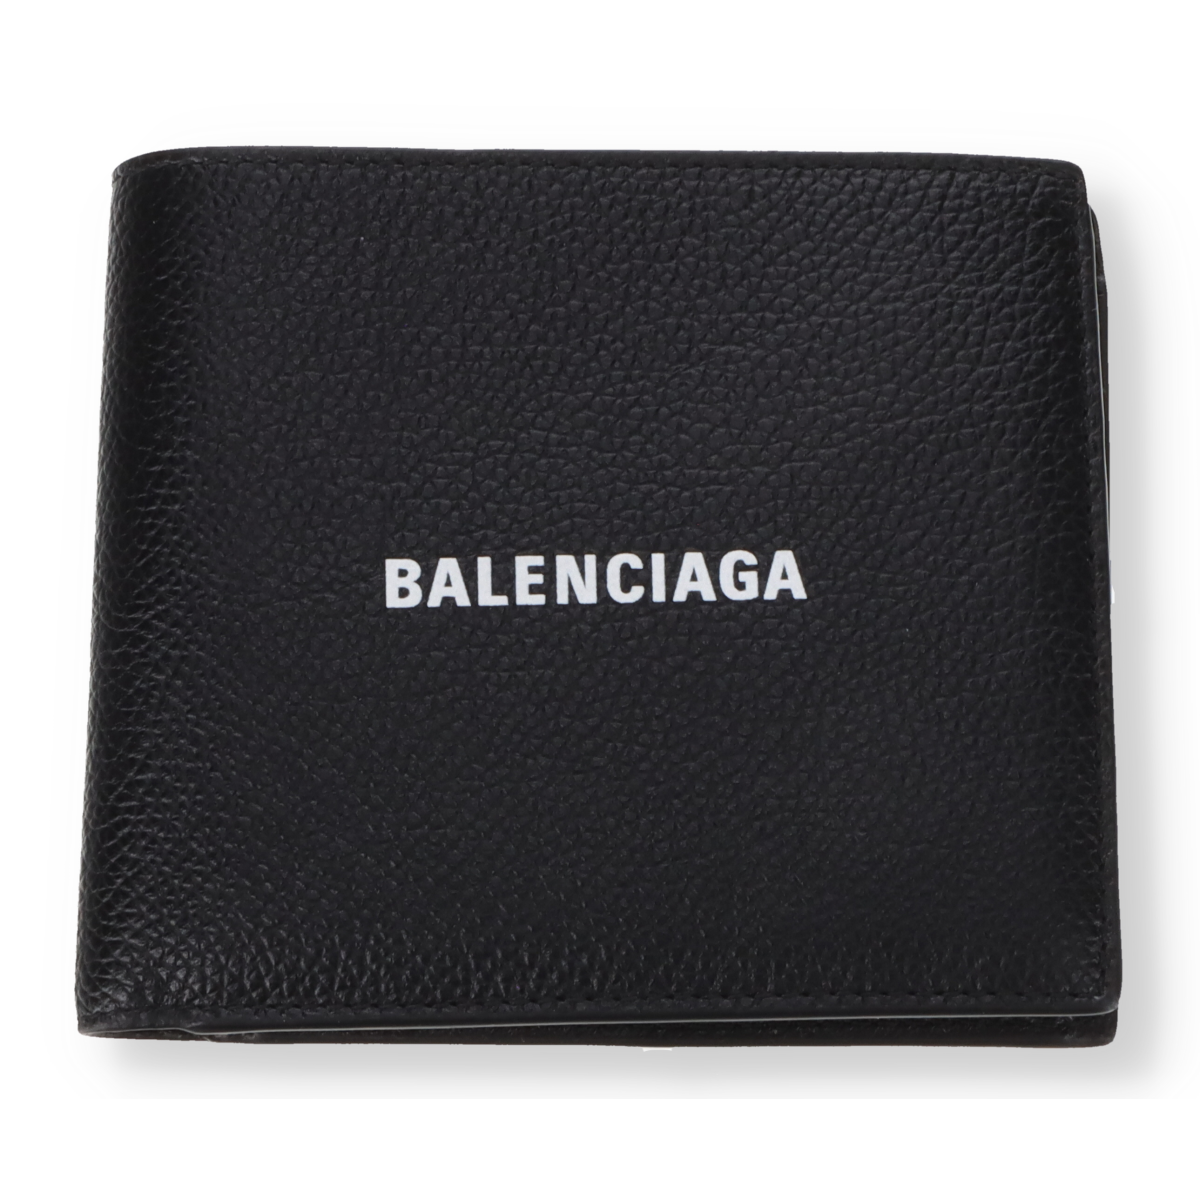 Porte monnaie Balenciaga